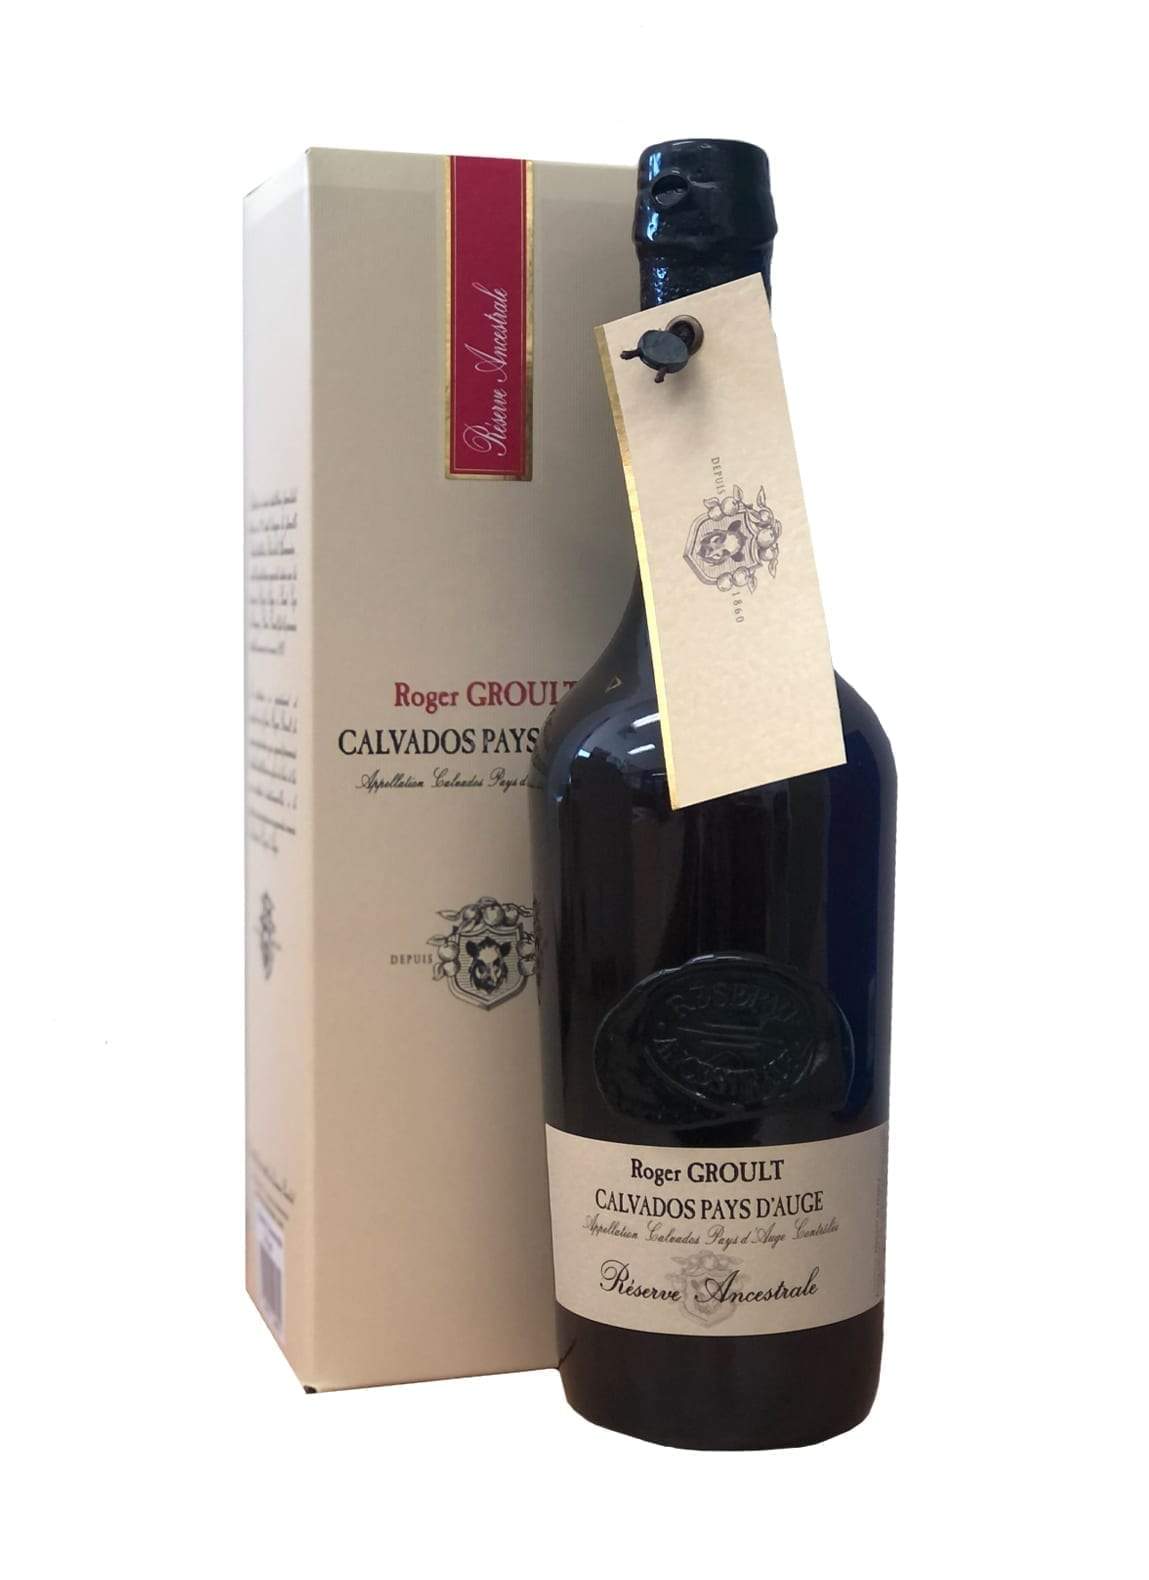 Roger Groult Calvados Pays D'Auge RŽserve Ancestrale 40% 700ml | Brandy | Shop online at Spirits of France